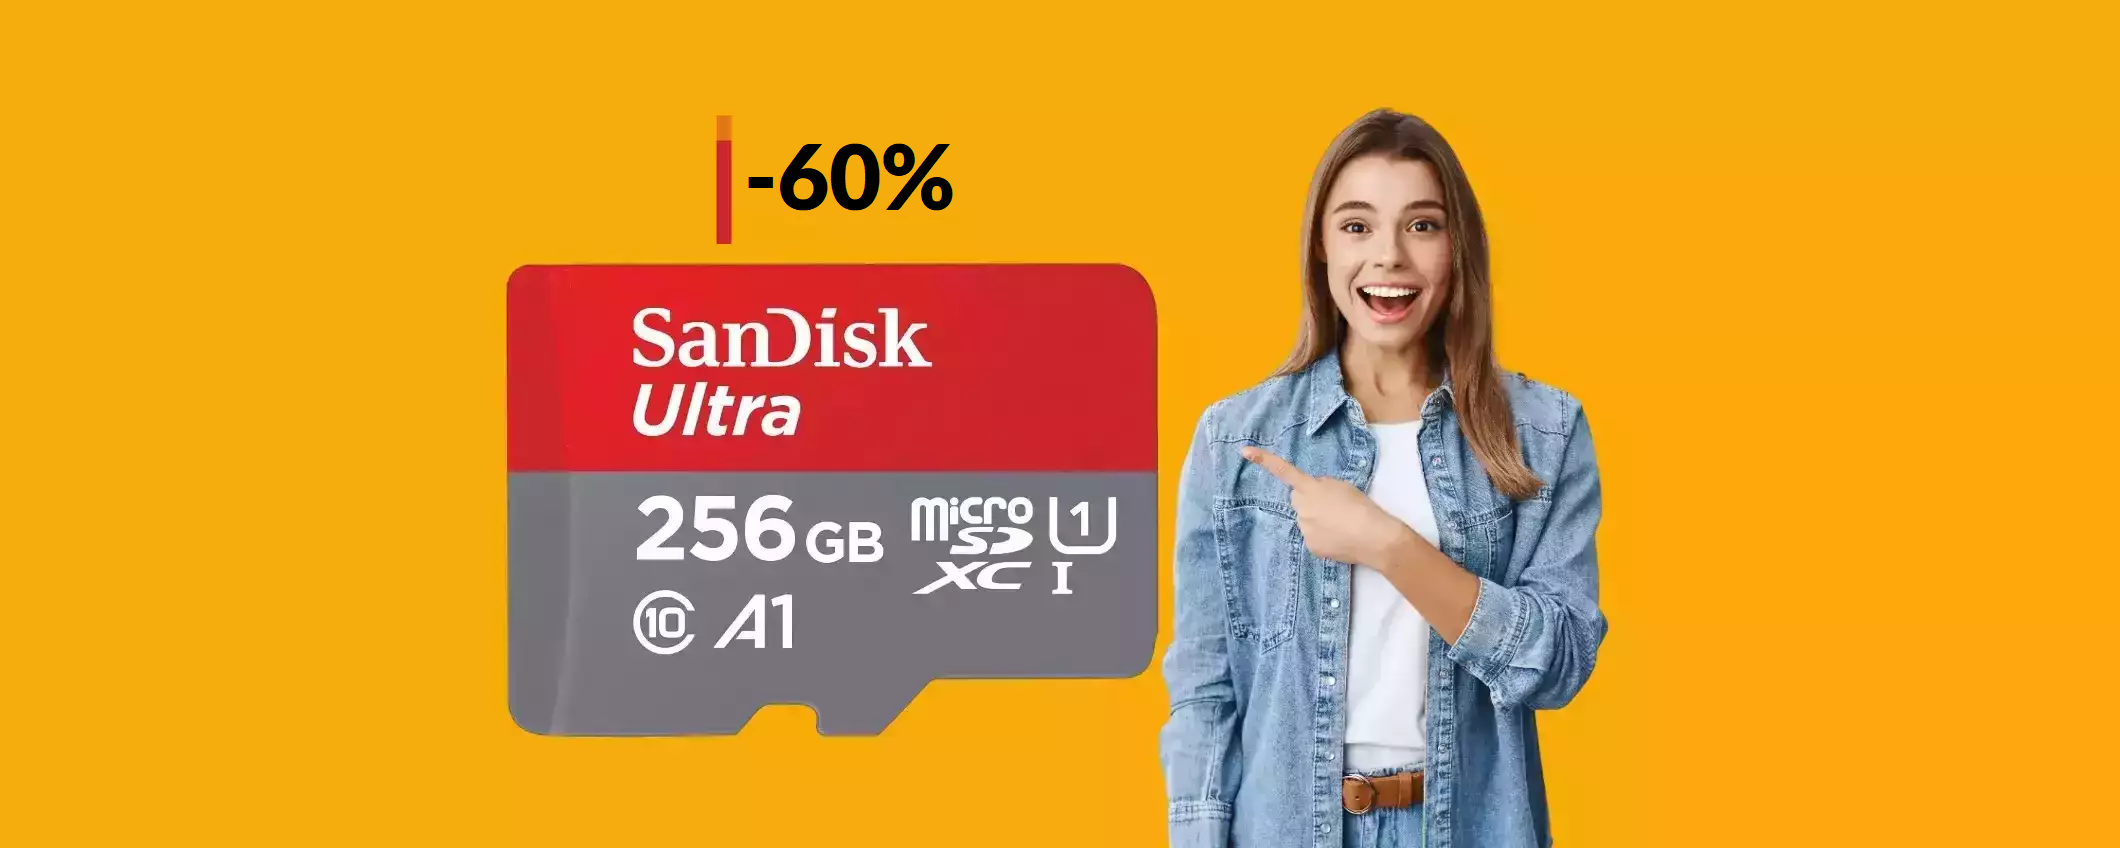 MicroSD SanDisk 256GB a soli 25€ con questo SUPER SCONTO